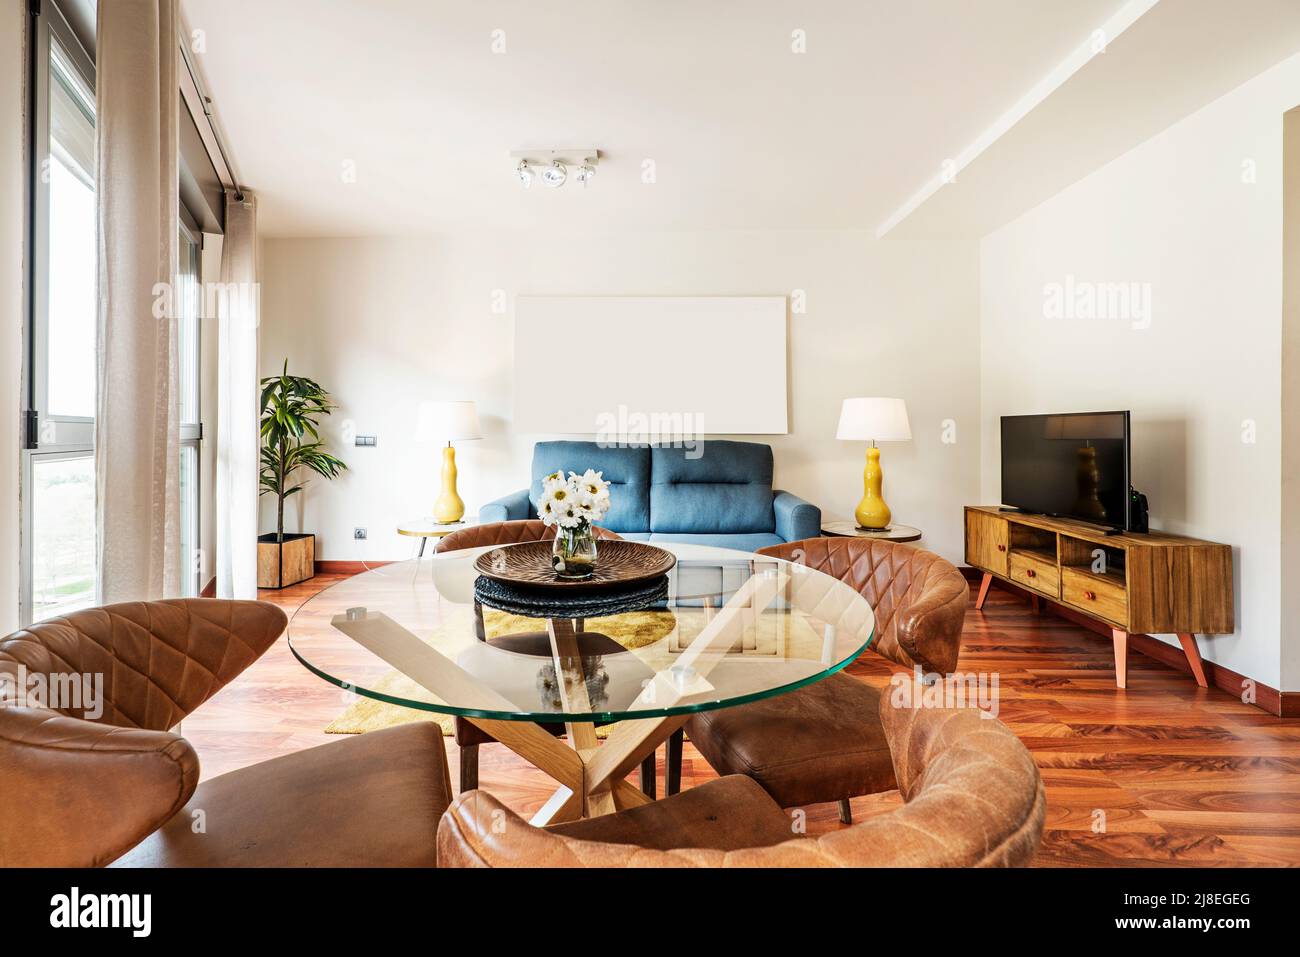 Wohnzimmer mit Schlafsofa in blauem Stoff, niedrigen Beistelltischen mit Lampen, Anrichte aus Holz mit Fernseher und runder Esstisch aus Glas Stockfoto